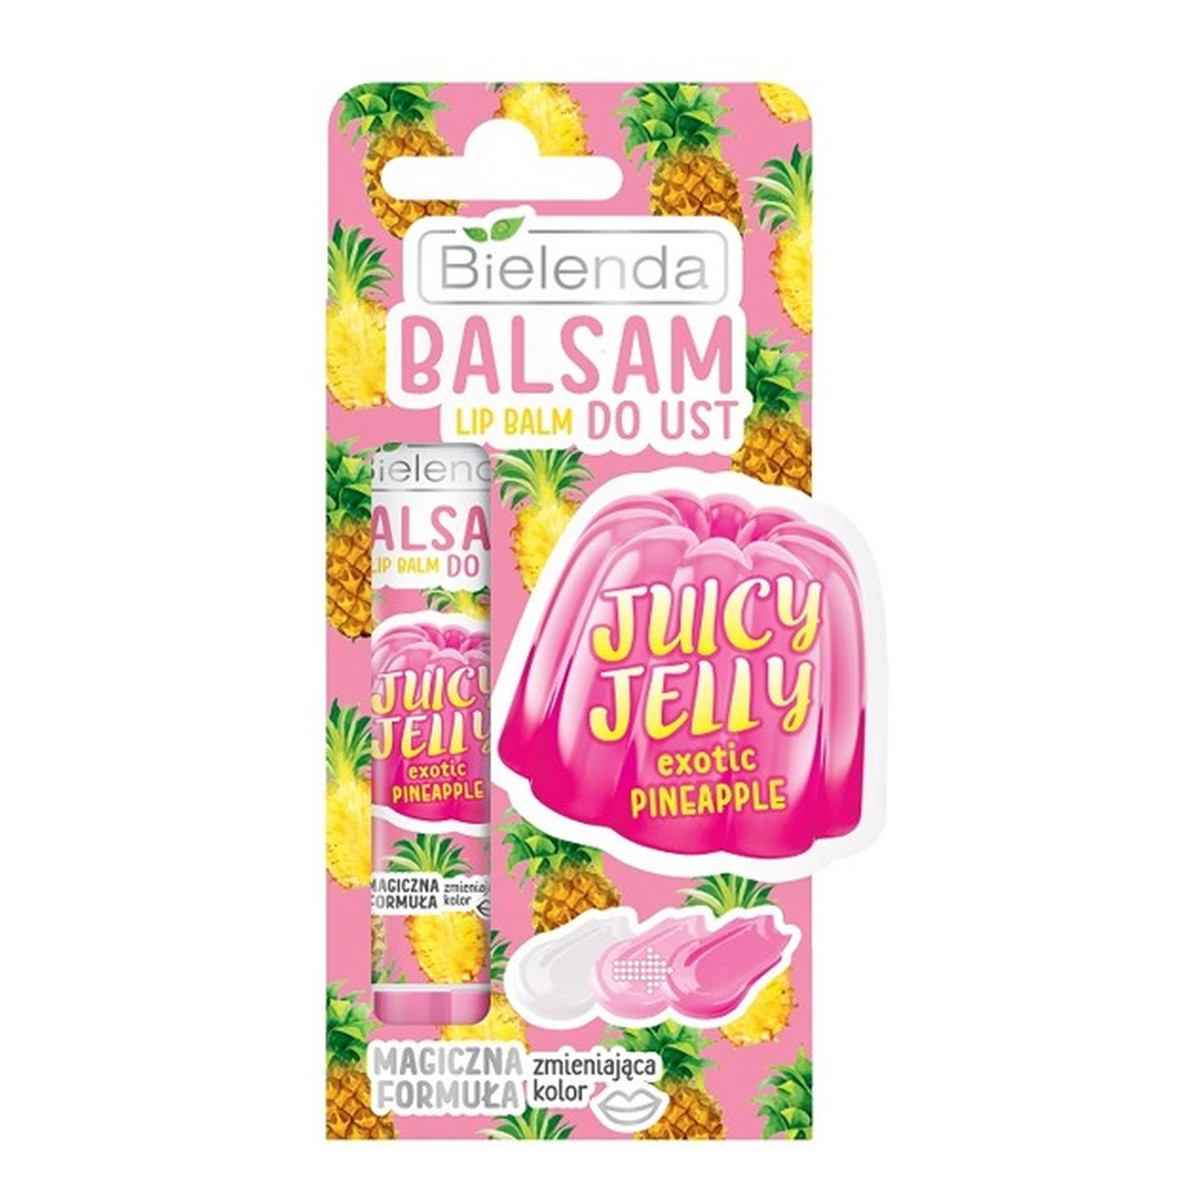 Bielenda Juicy Jelly Balsam do ust zmieniający kolor EXOTIC PINEAPLE 10g